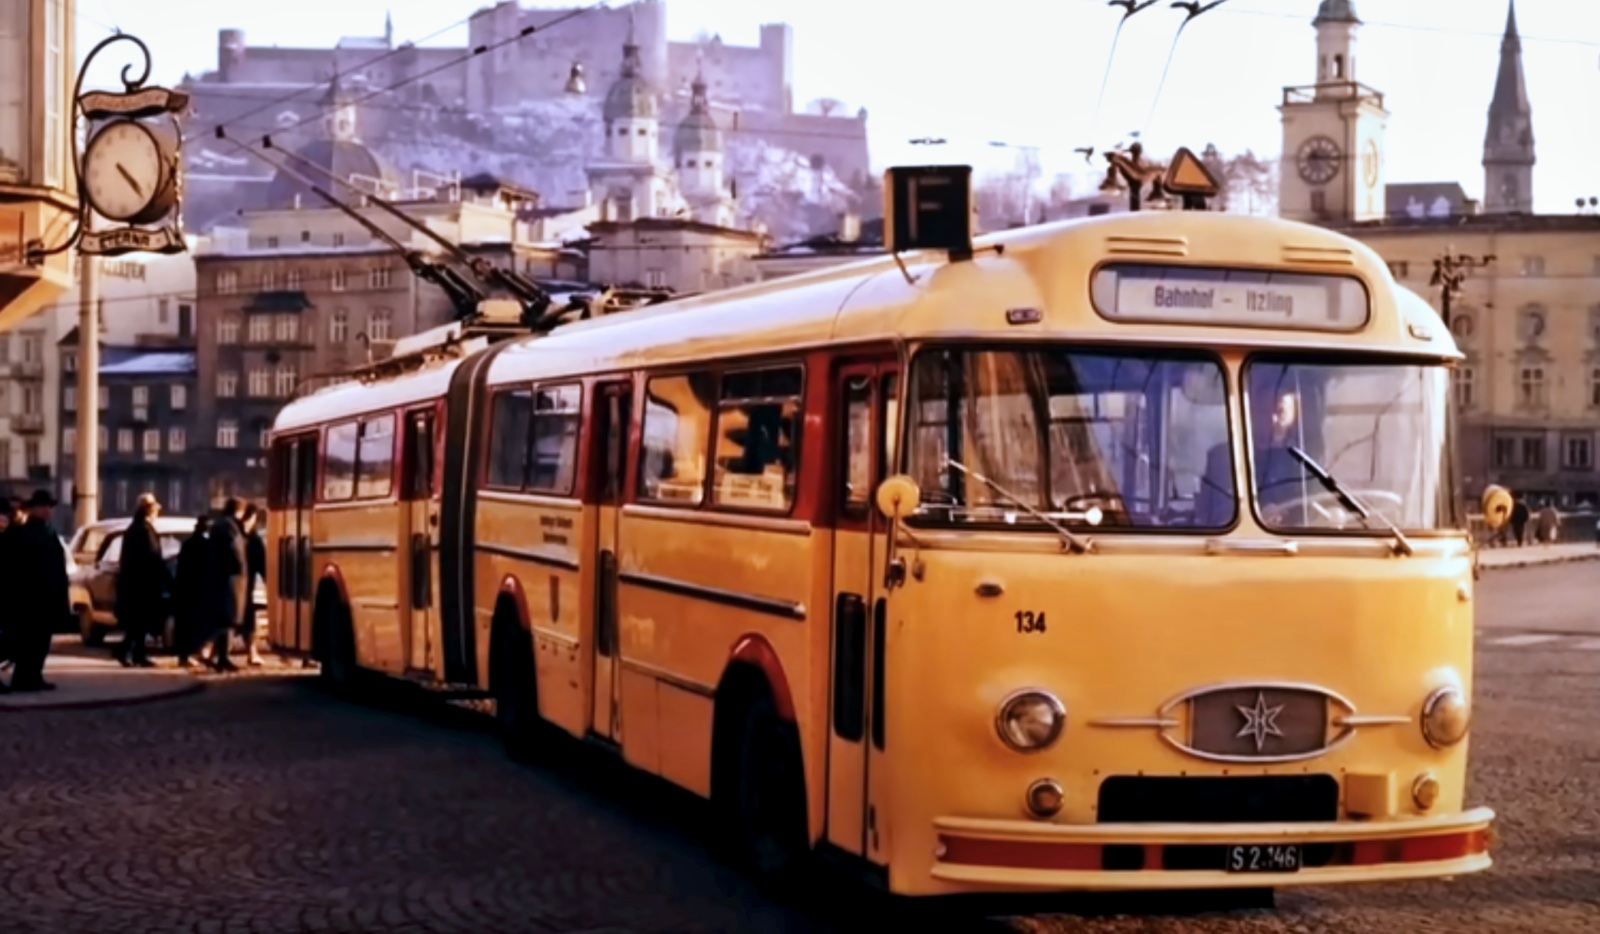 134
Oryginał jako trolejbus.
Słowa kluczowe: HenschelHS160SL 134 1959